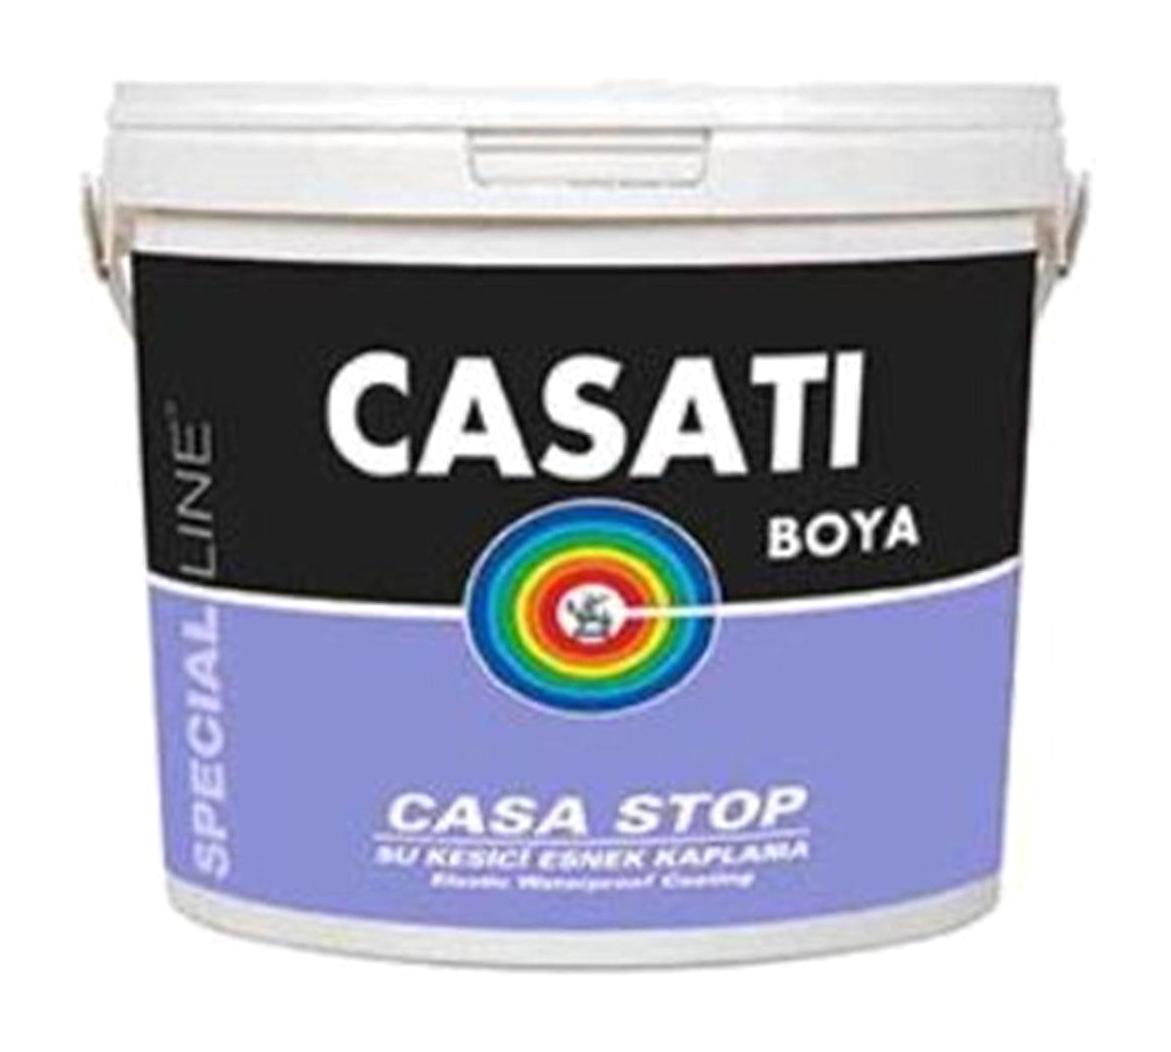 Casati Casa Stop Su Bazlı Dış Cephe Boyası 3 kg Beyaz